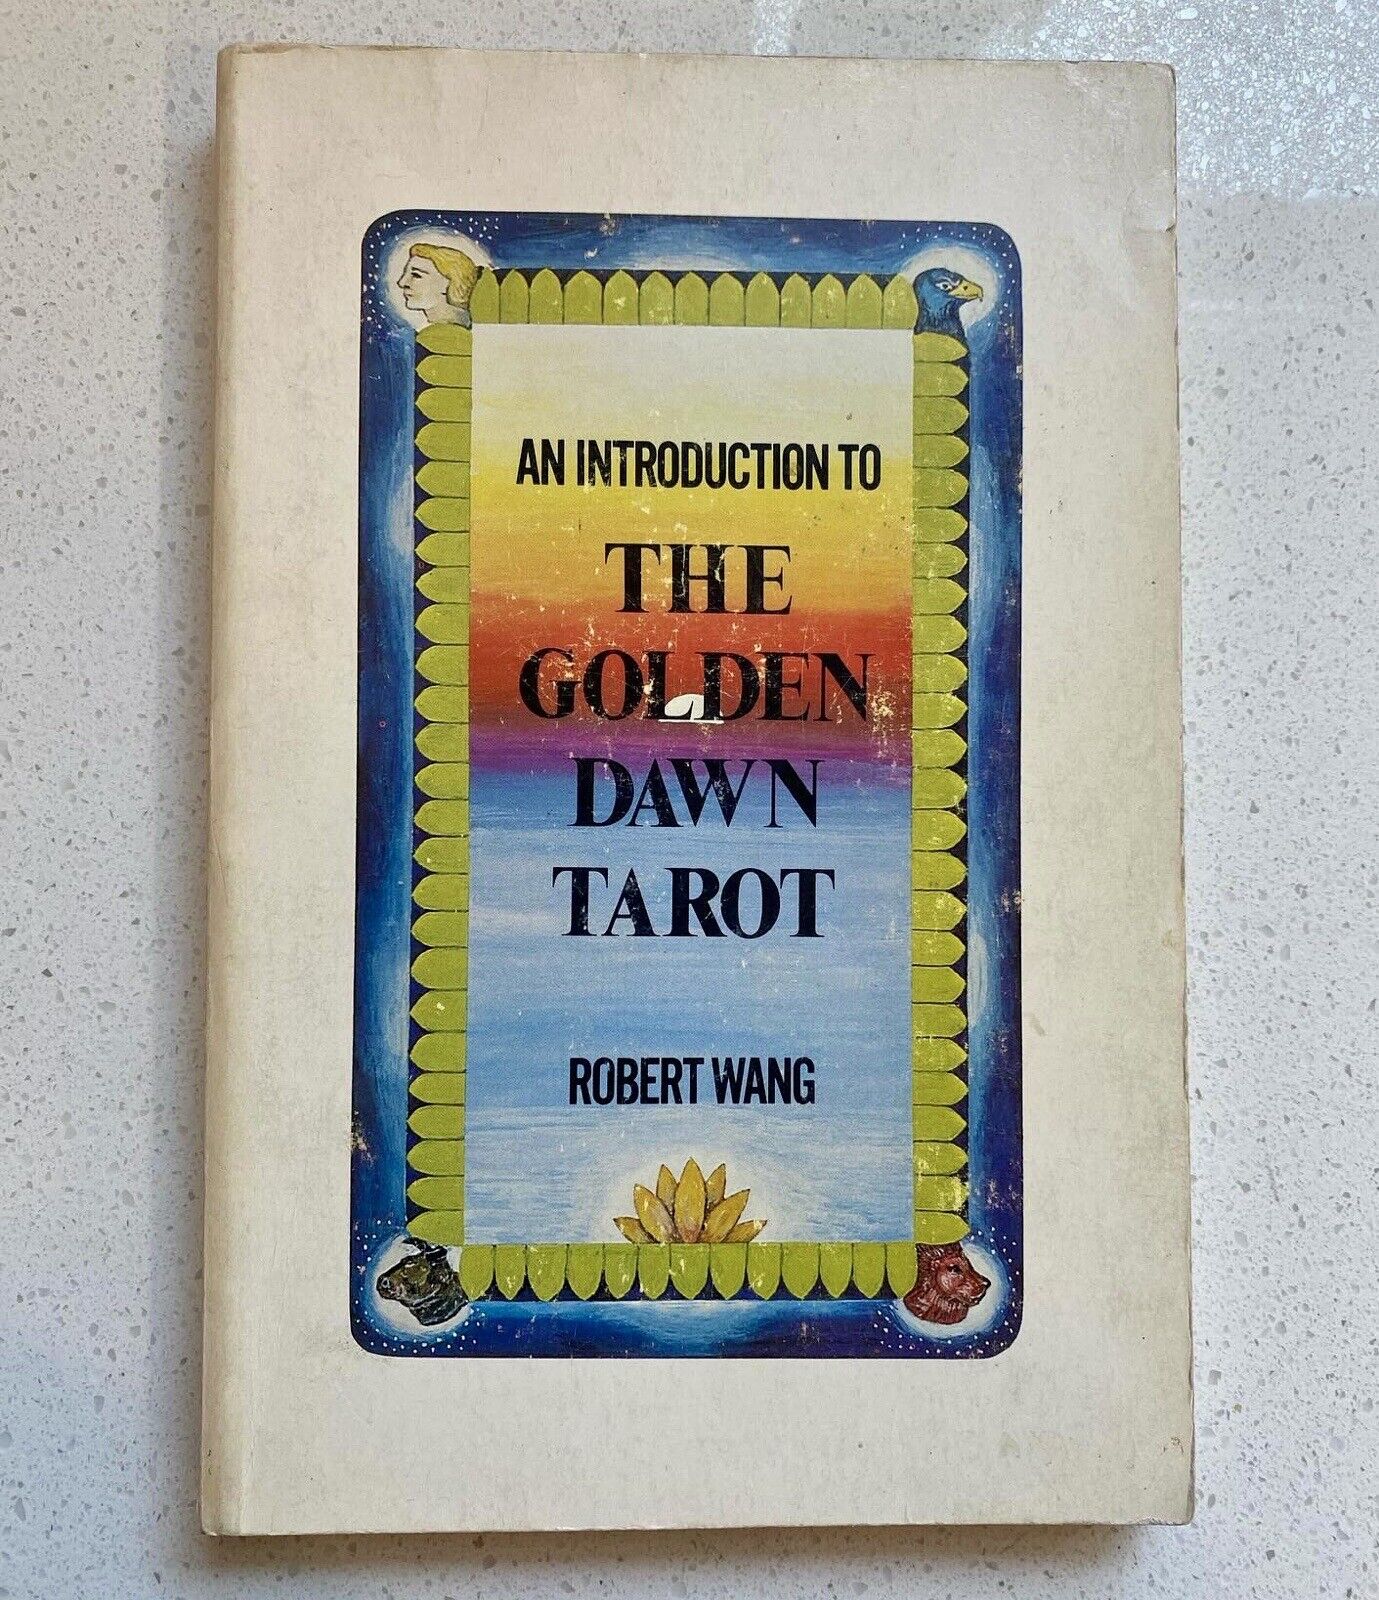 RARE Introduction To Golden Dawn Tarot Book by Wang 1979 Samuel Weiser Regardie